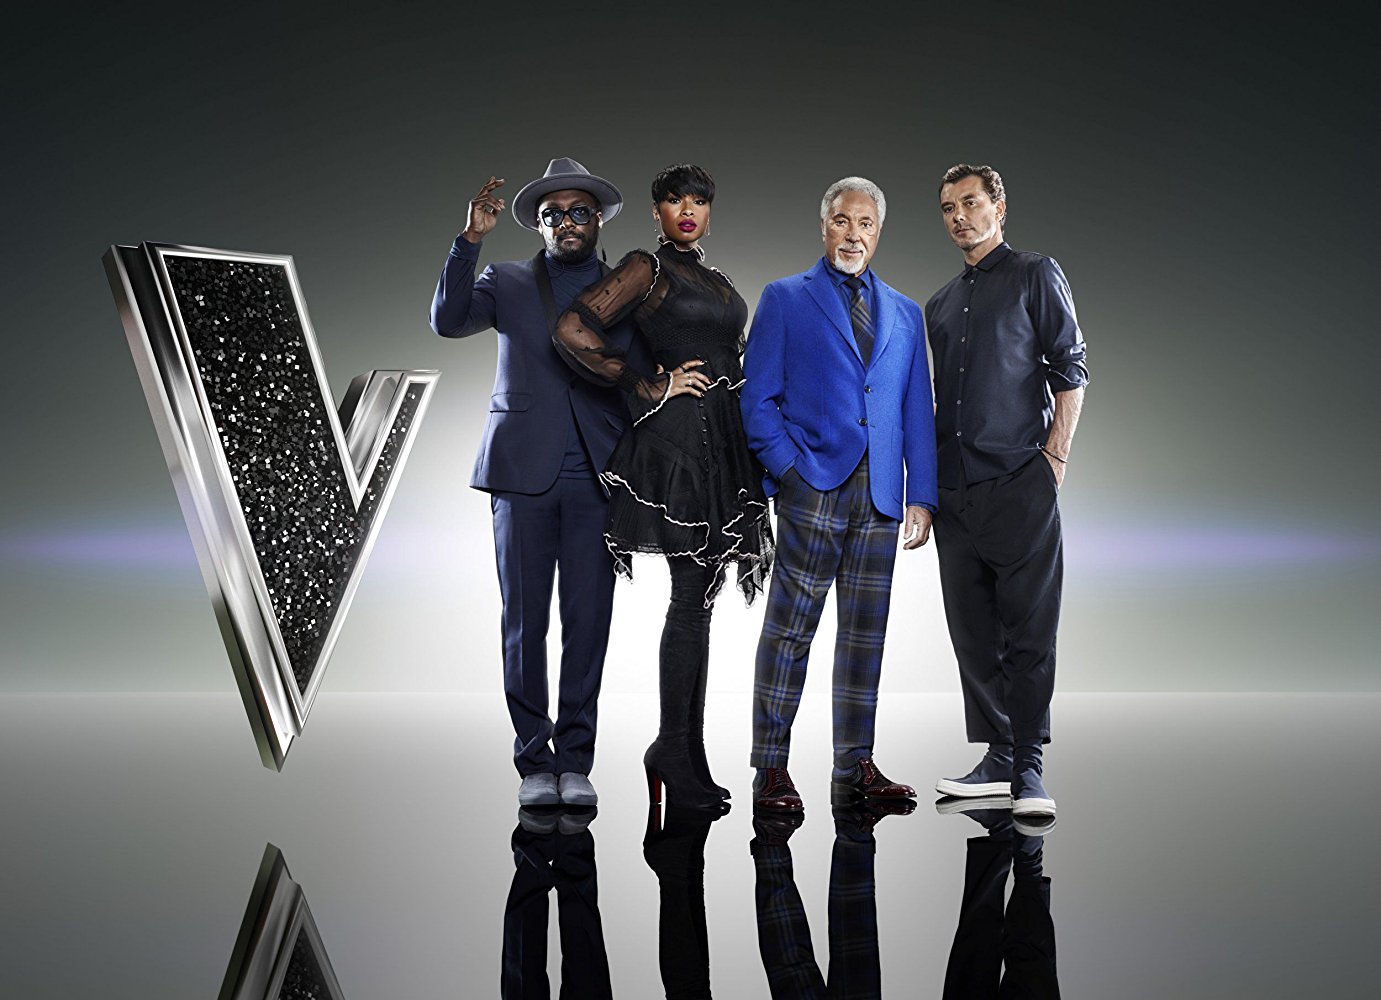 The Voice UK - Season 10